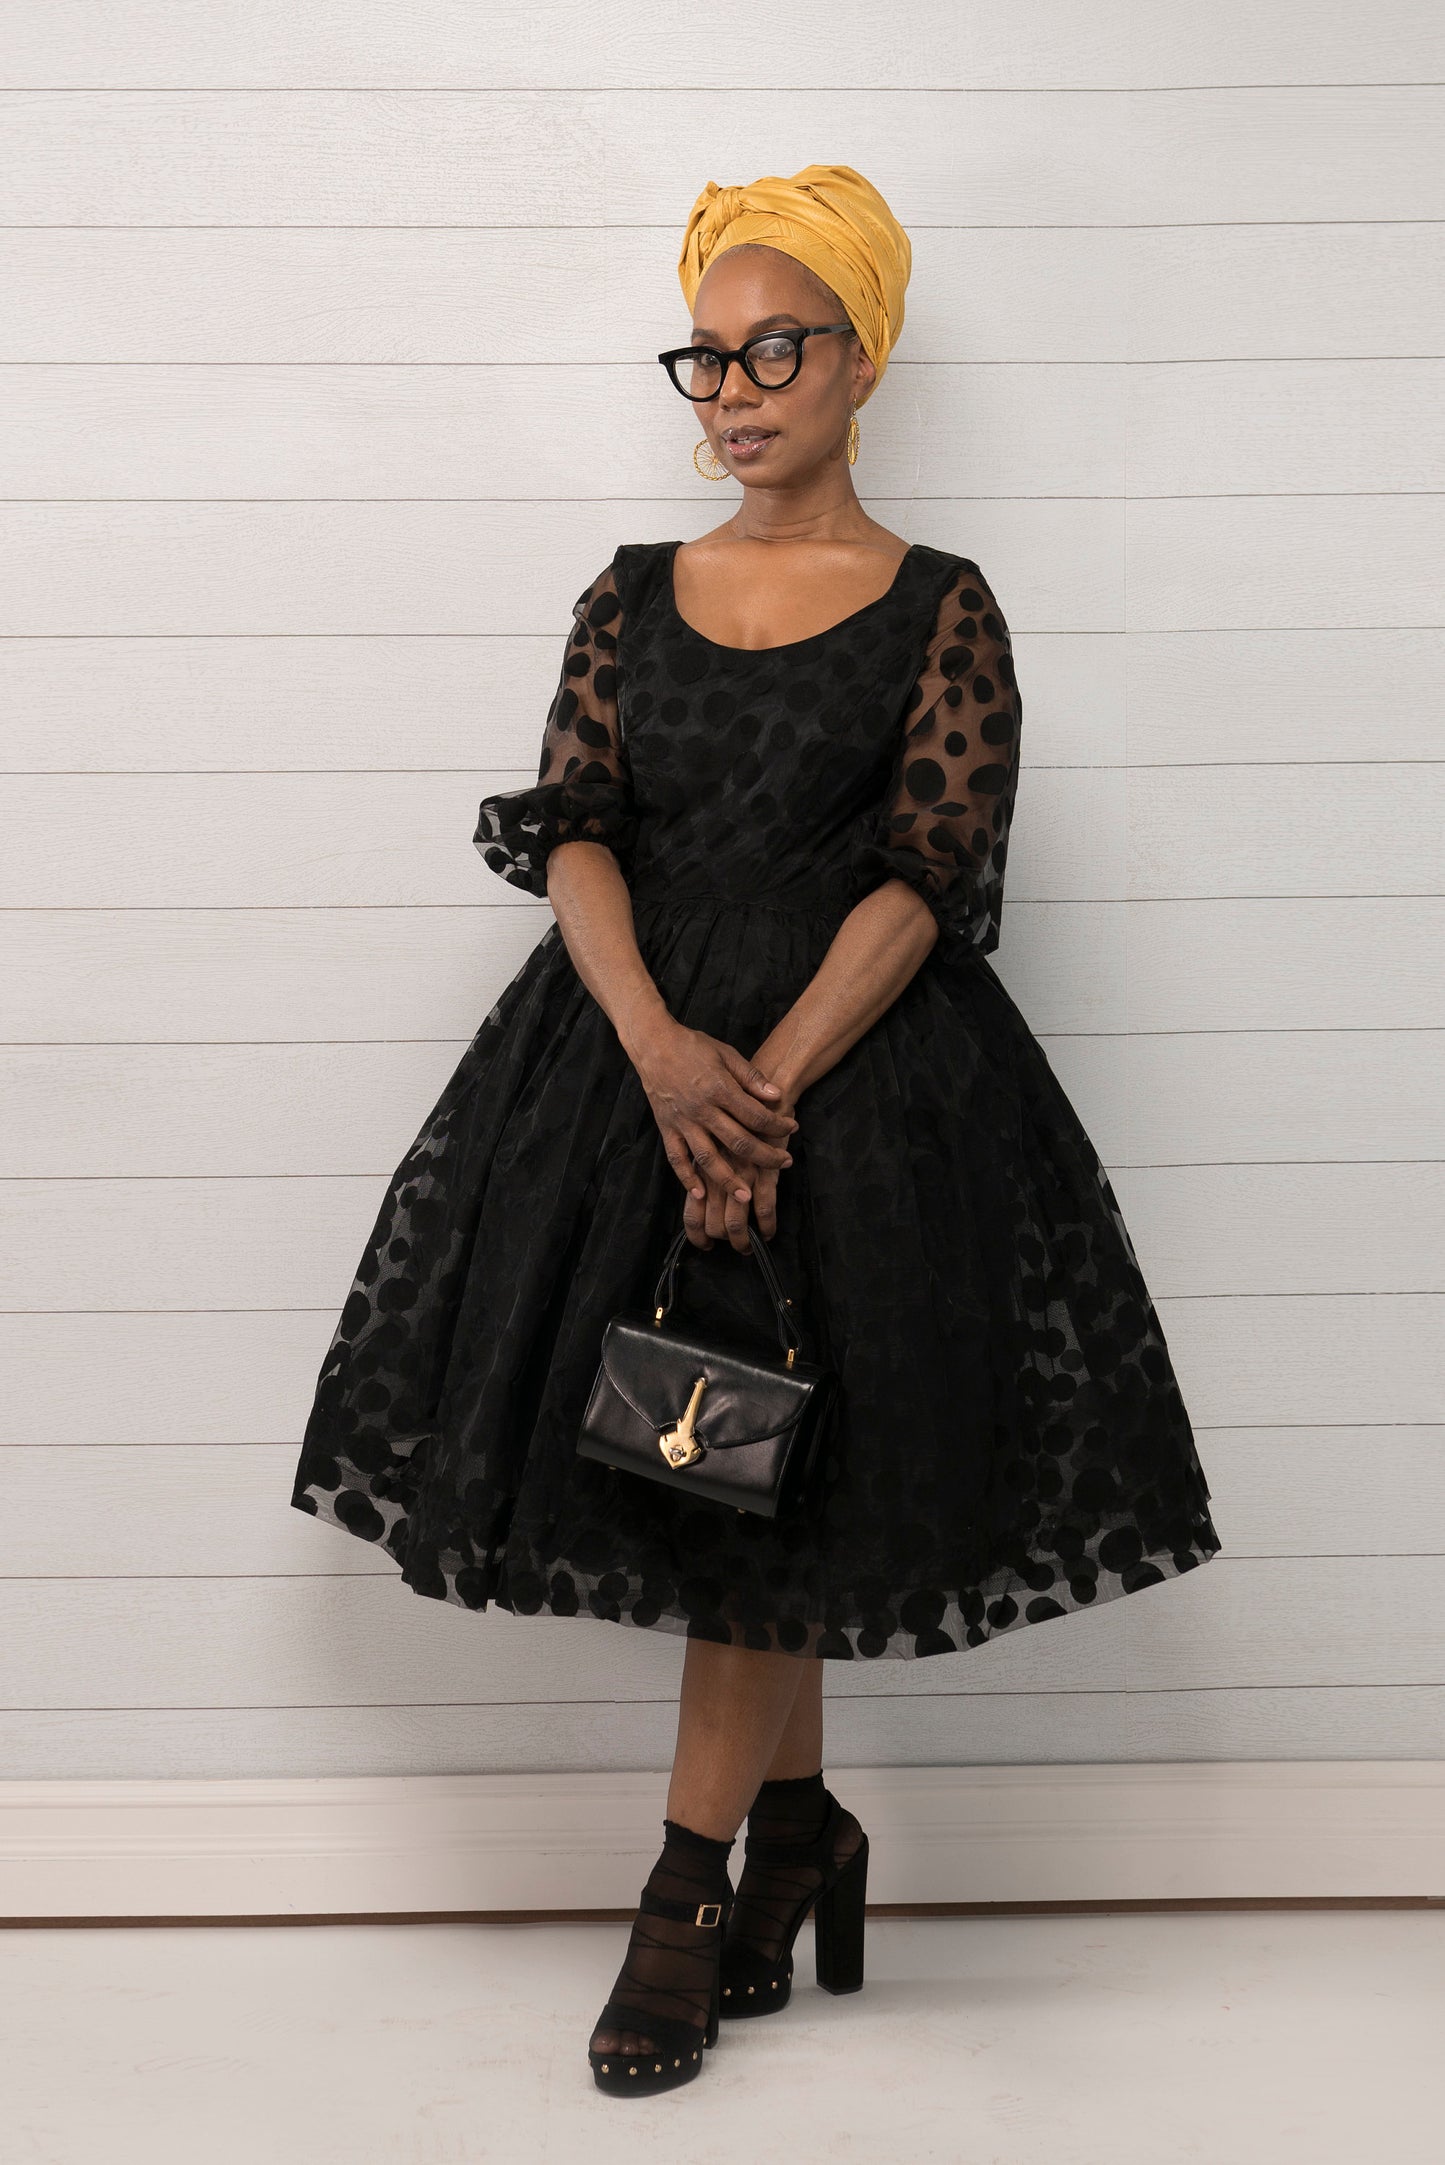 NEYUSI Belle Dress, Black Organza Belle Dress, 1950 style Scoop neck Dress